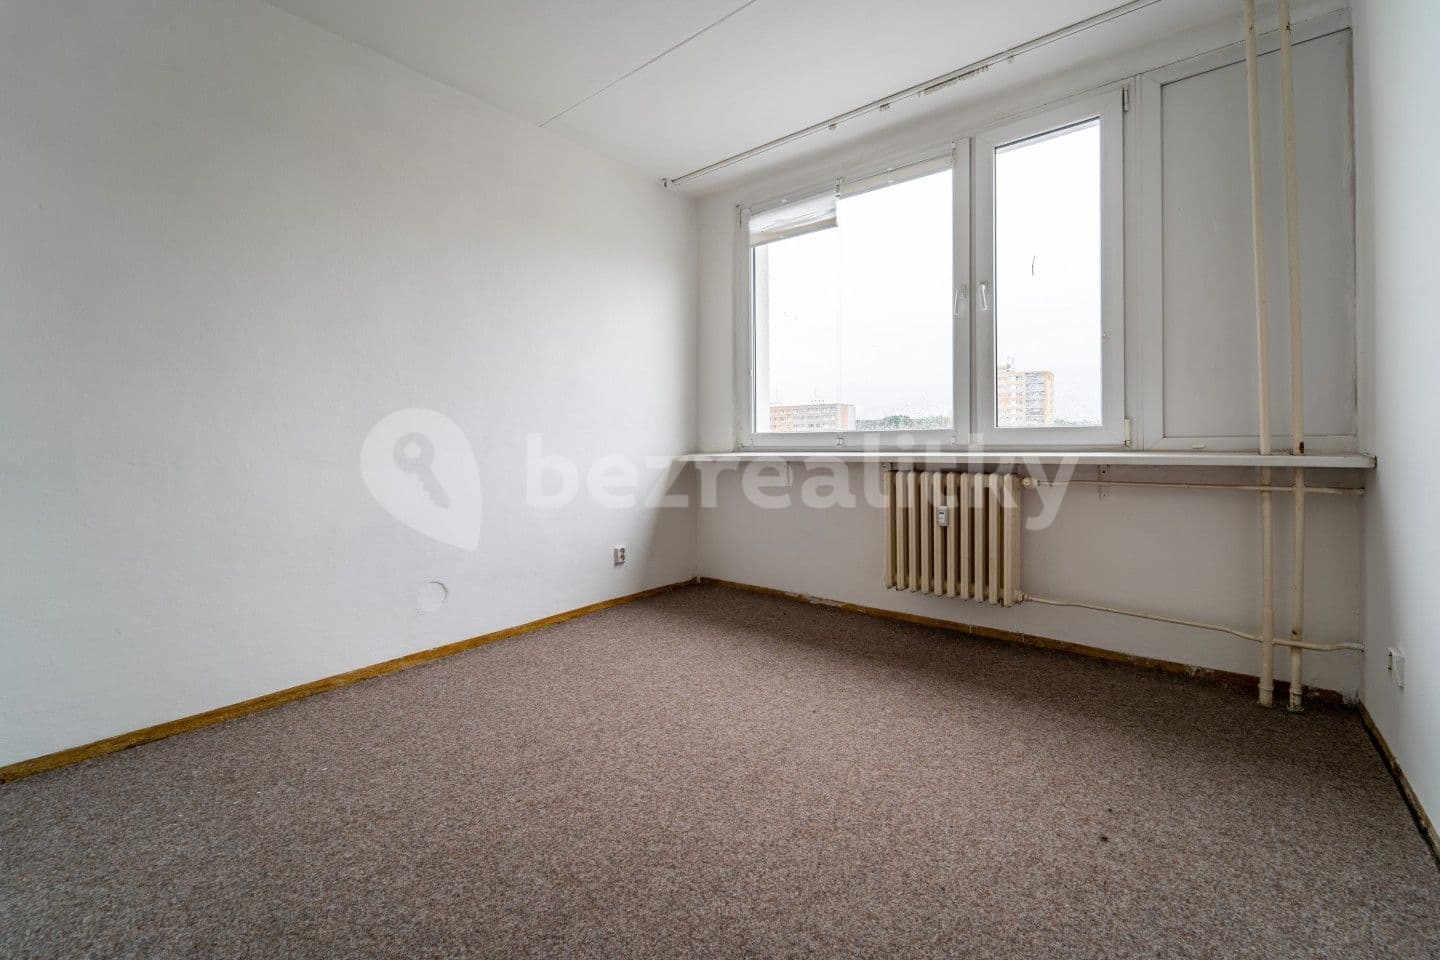 3 bedroom flat for sale, 75 m², Anglická, Kladno, Středočeský Region